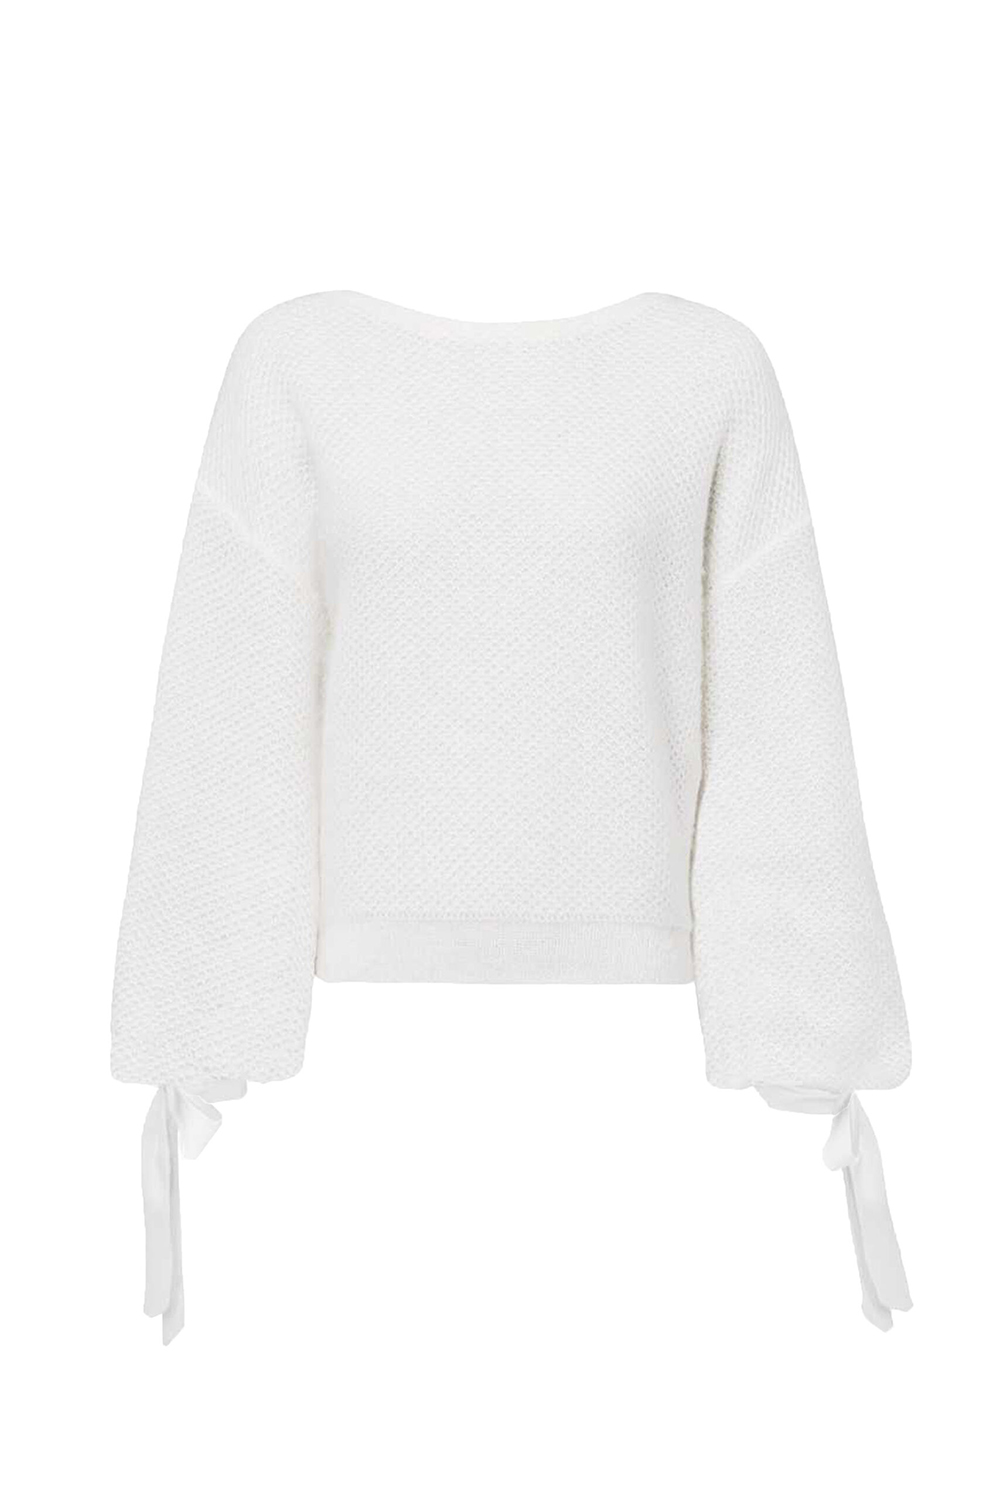 Bellini Knit Sweater